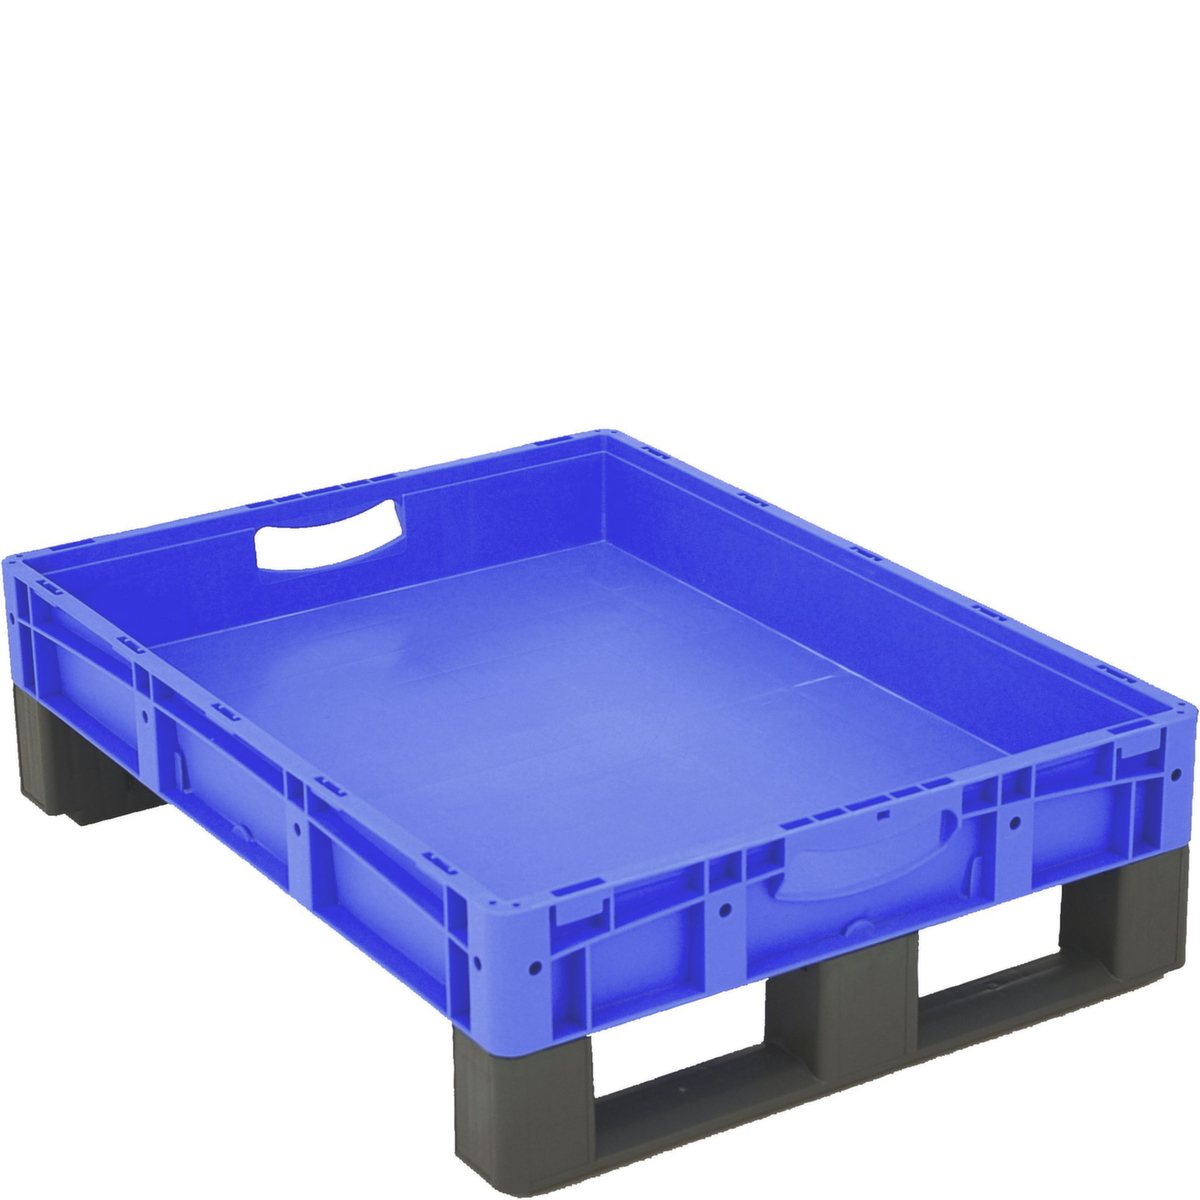 Euronorm-Stapelbehälter mit Doppelboden, blau, Inhalt 36 l Standard 2 ZOOM